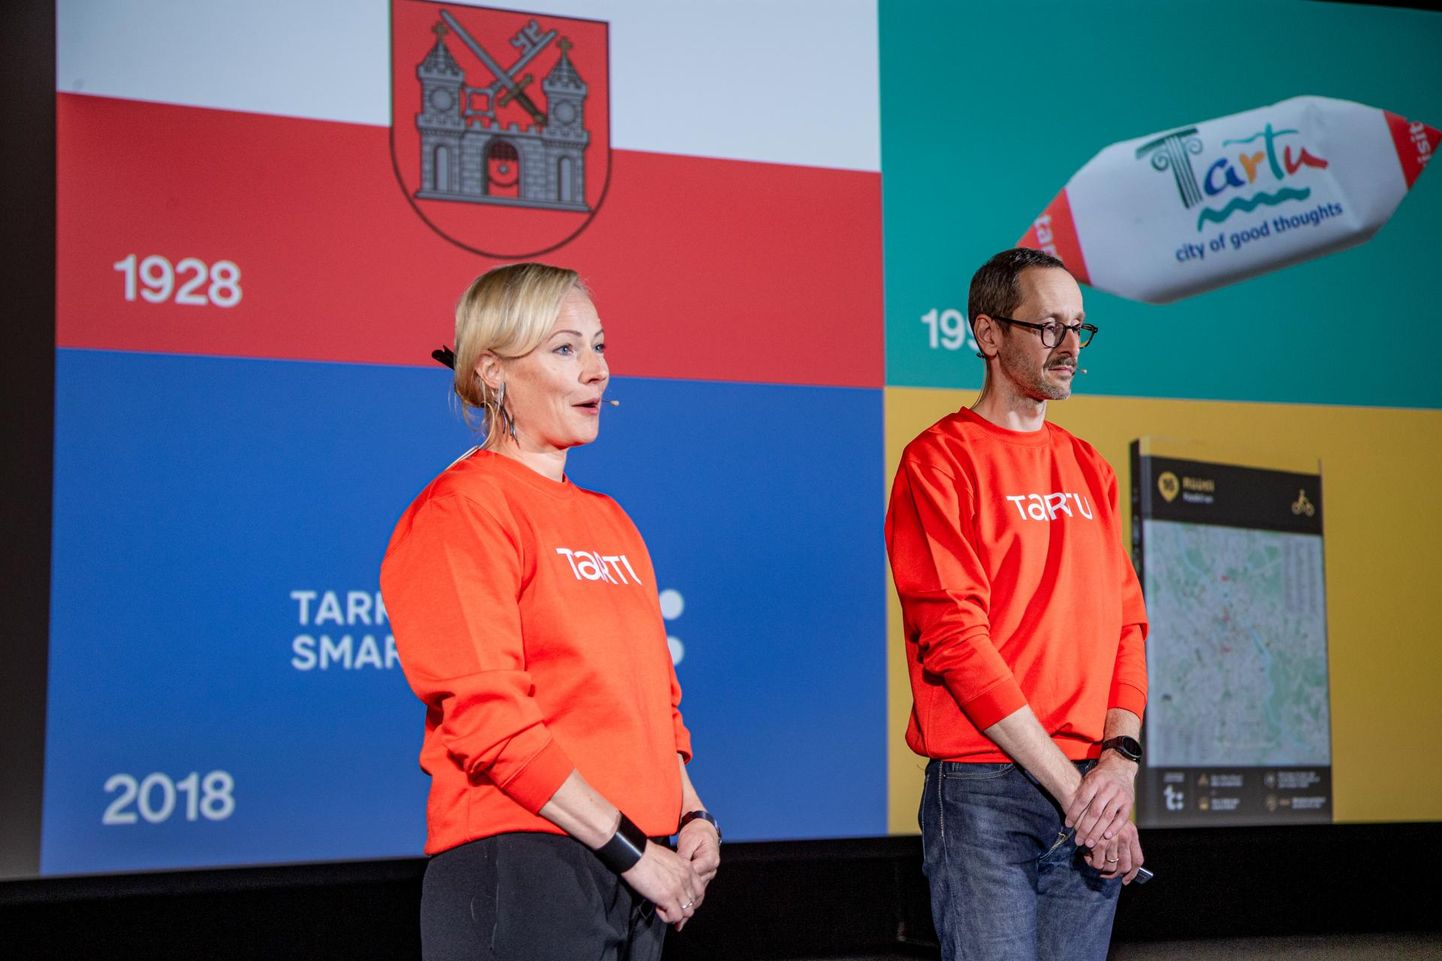 Helen Kalberg ja Alari Orav kandsid esitlusel pusa, mille peal on Tartu uus logo.